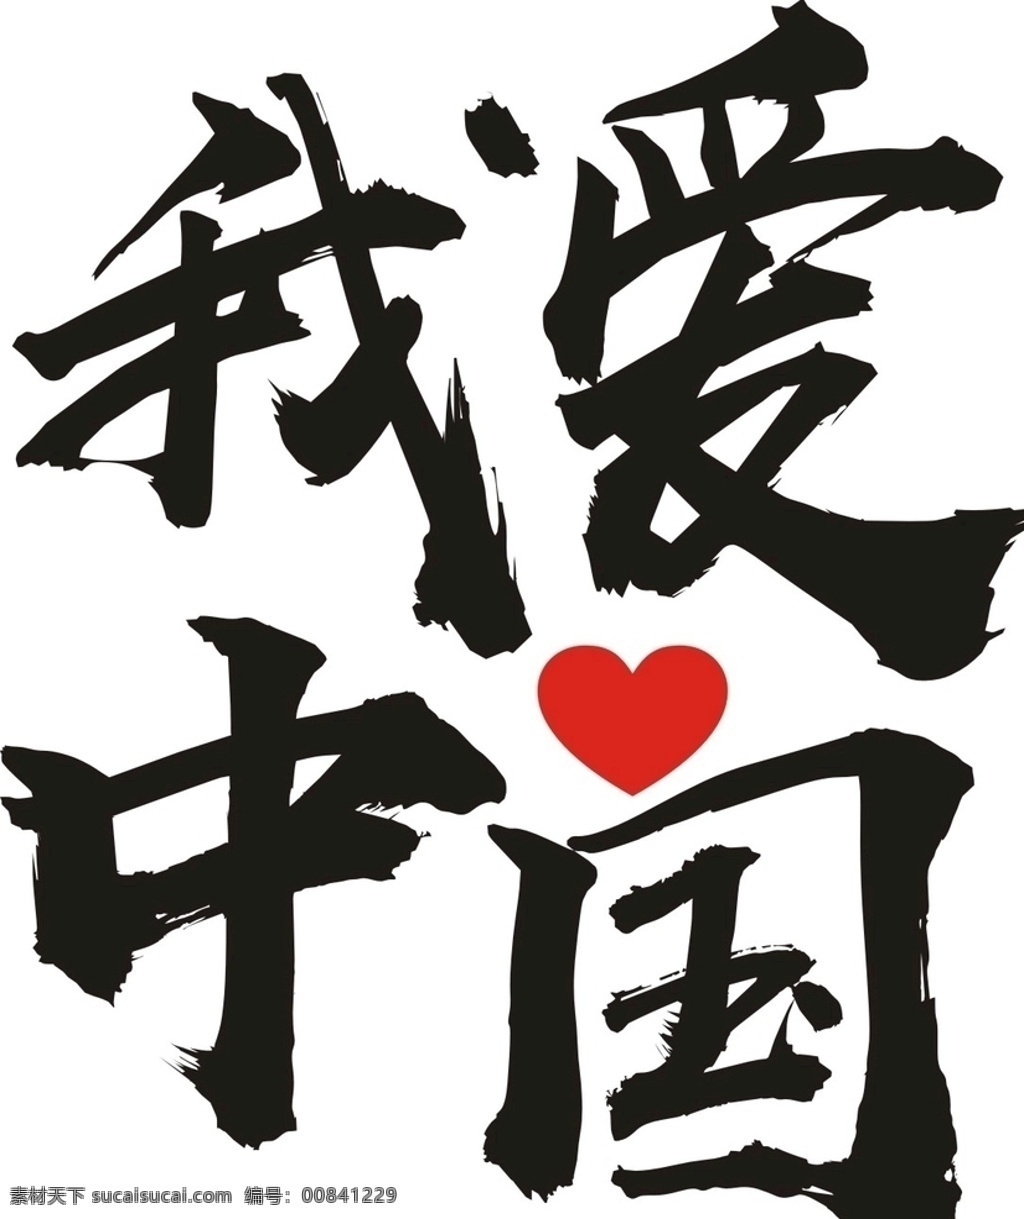 我爱中国 我爱你中国 i love china 班服 t恤 我爱中国系列